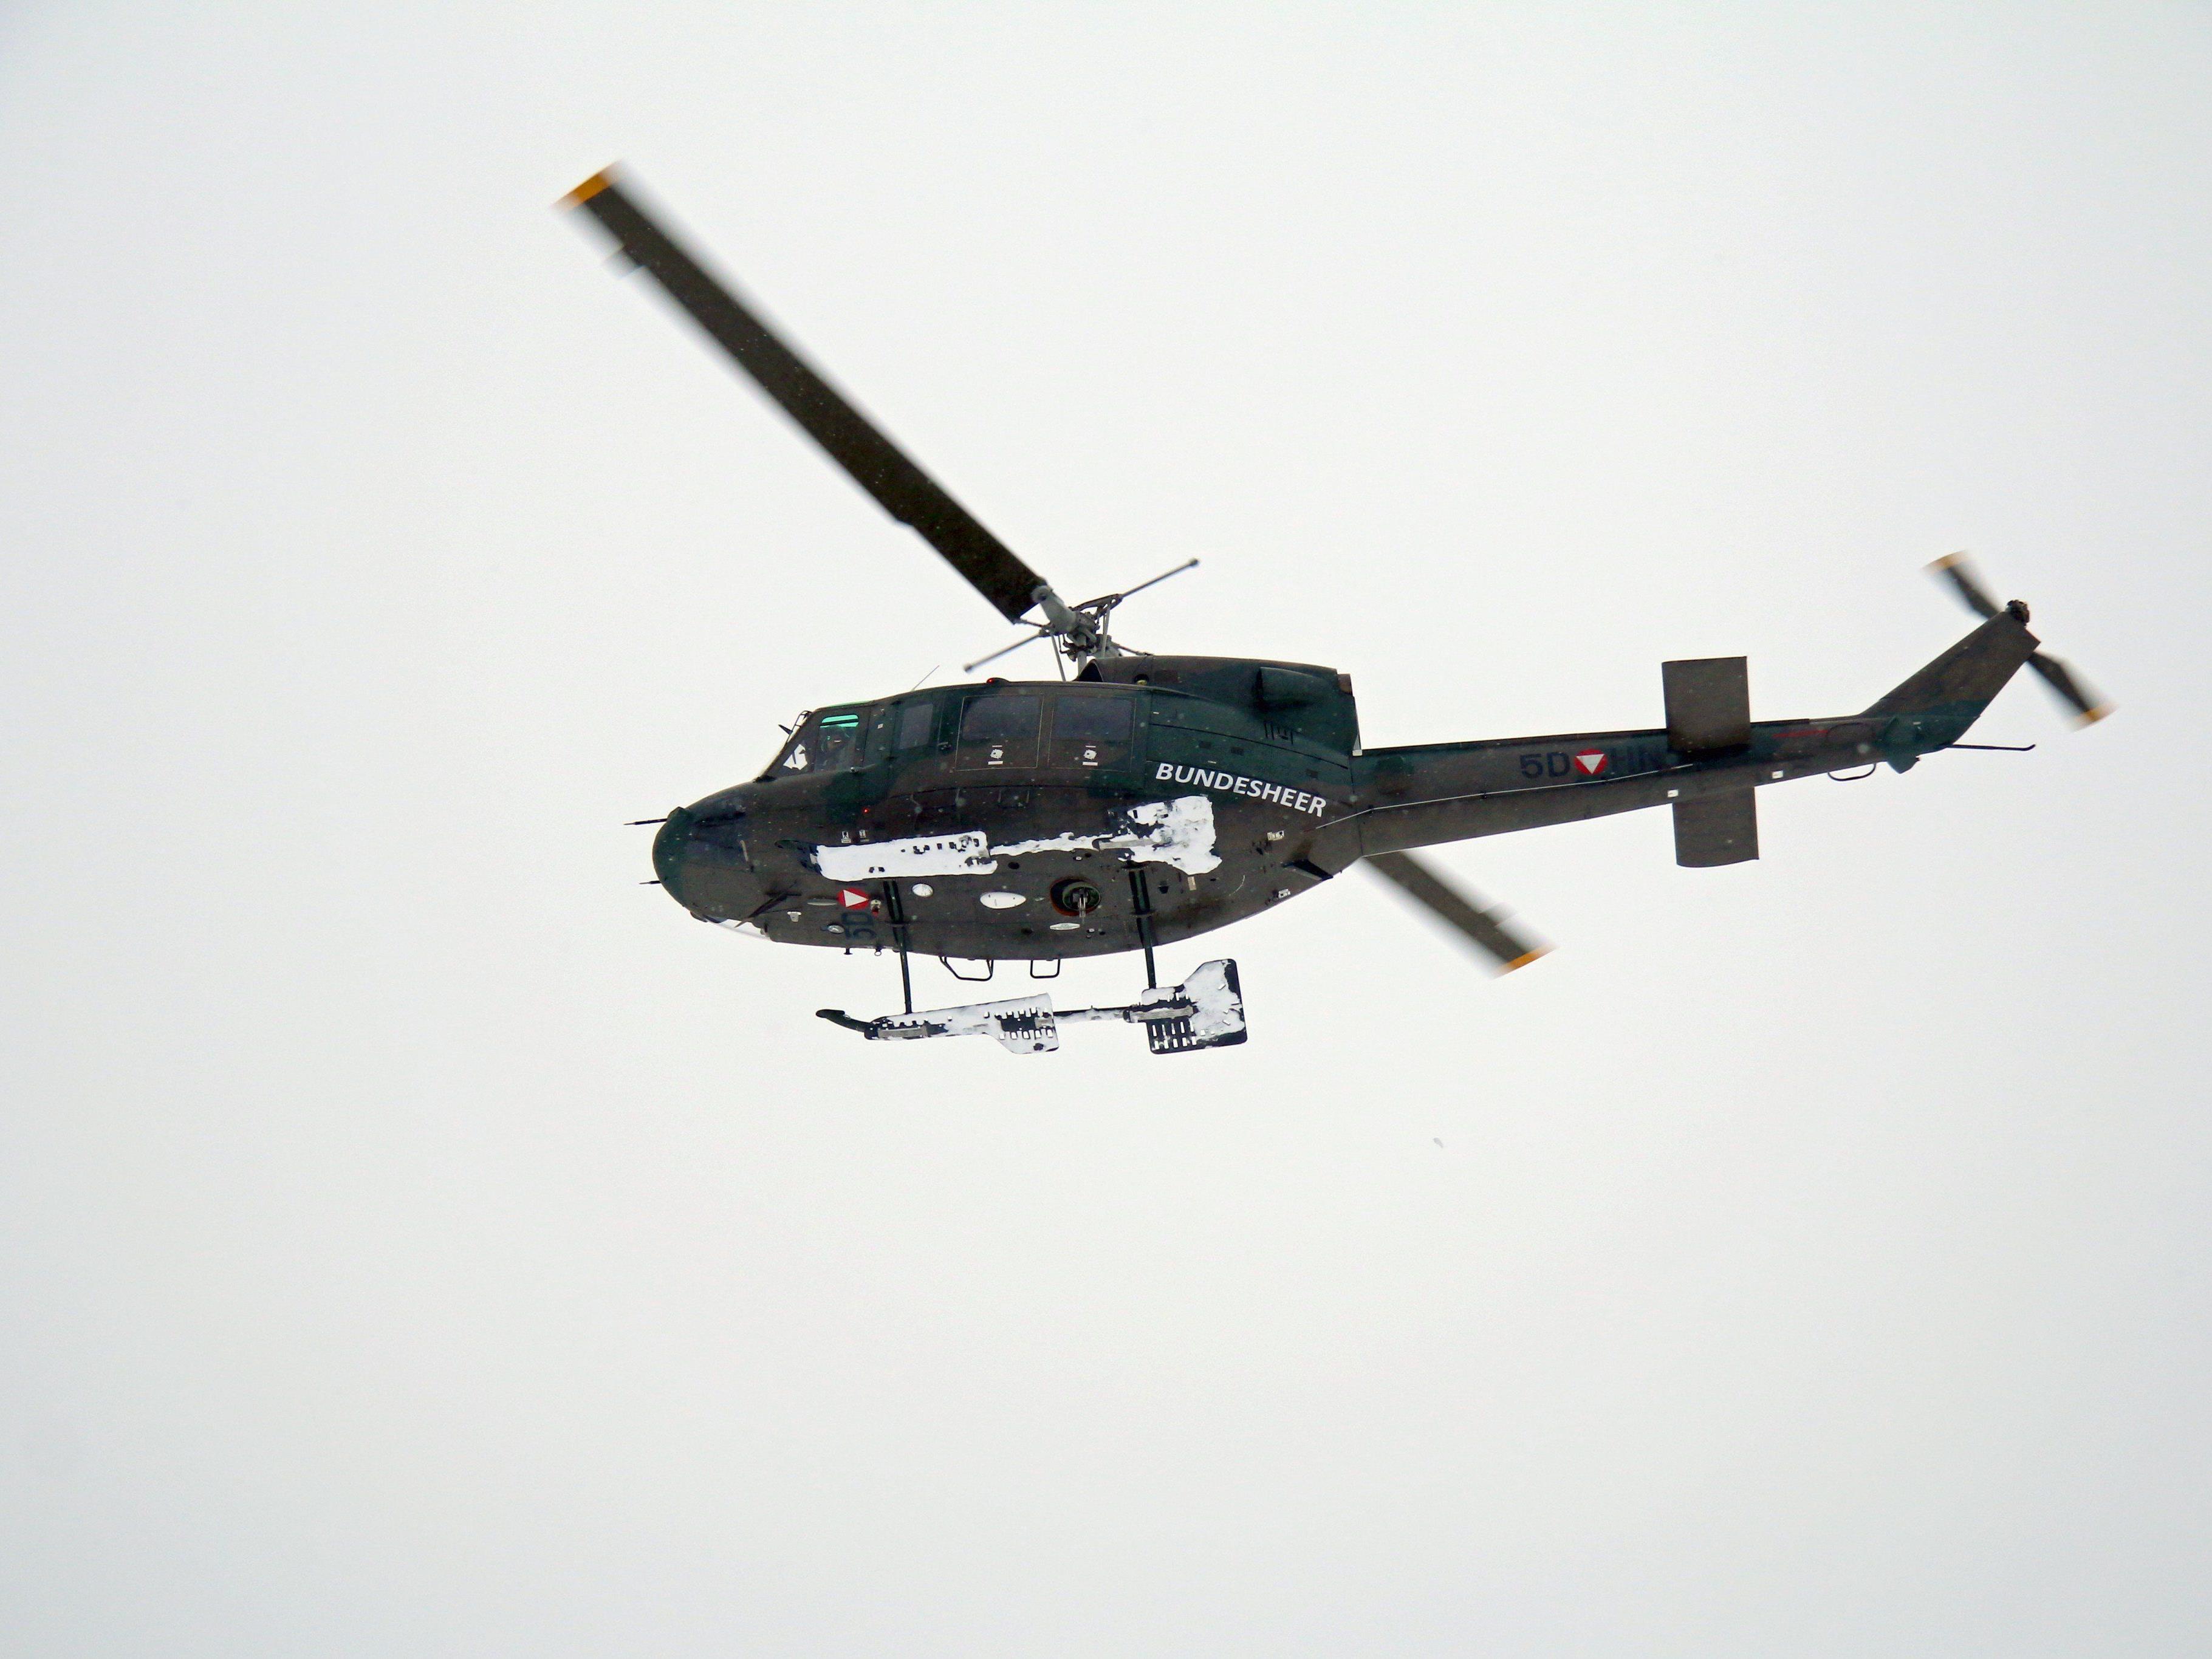 Während der Operation "Daedalus" sichern von Hohenems aus drei Hubschrauber und 22 Mann des ERTA den Luftraum während des Weltwirtschaftsforum in Davos.